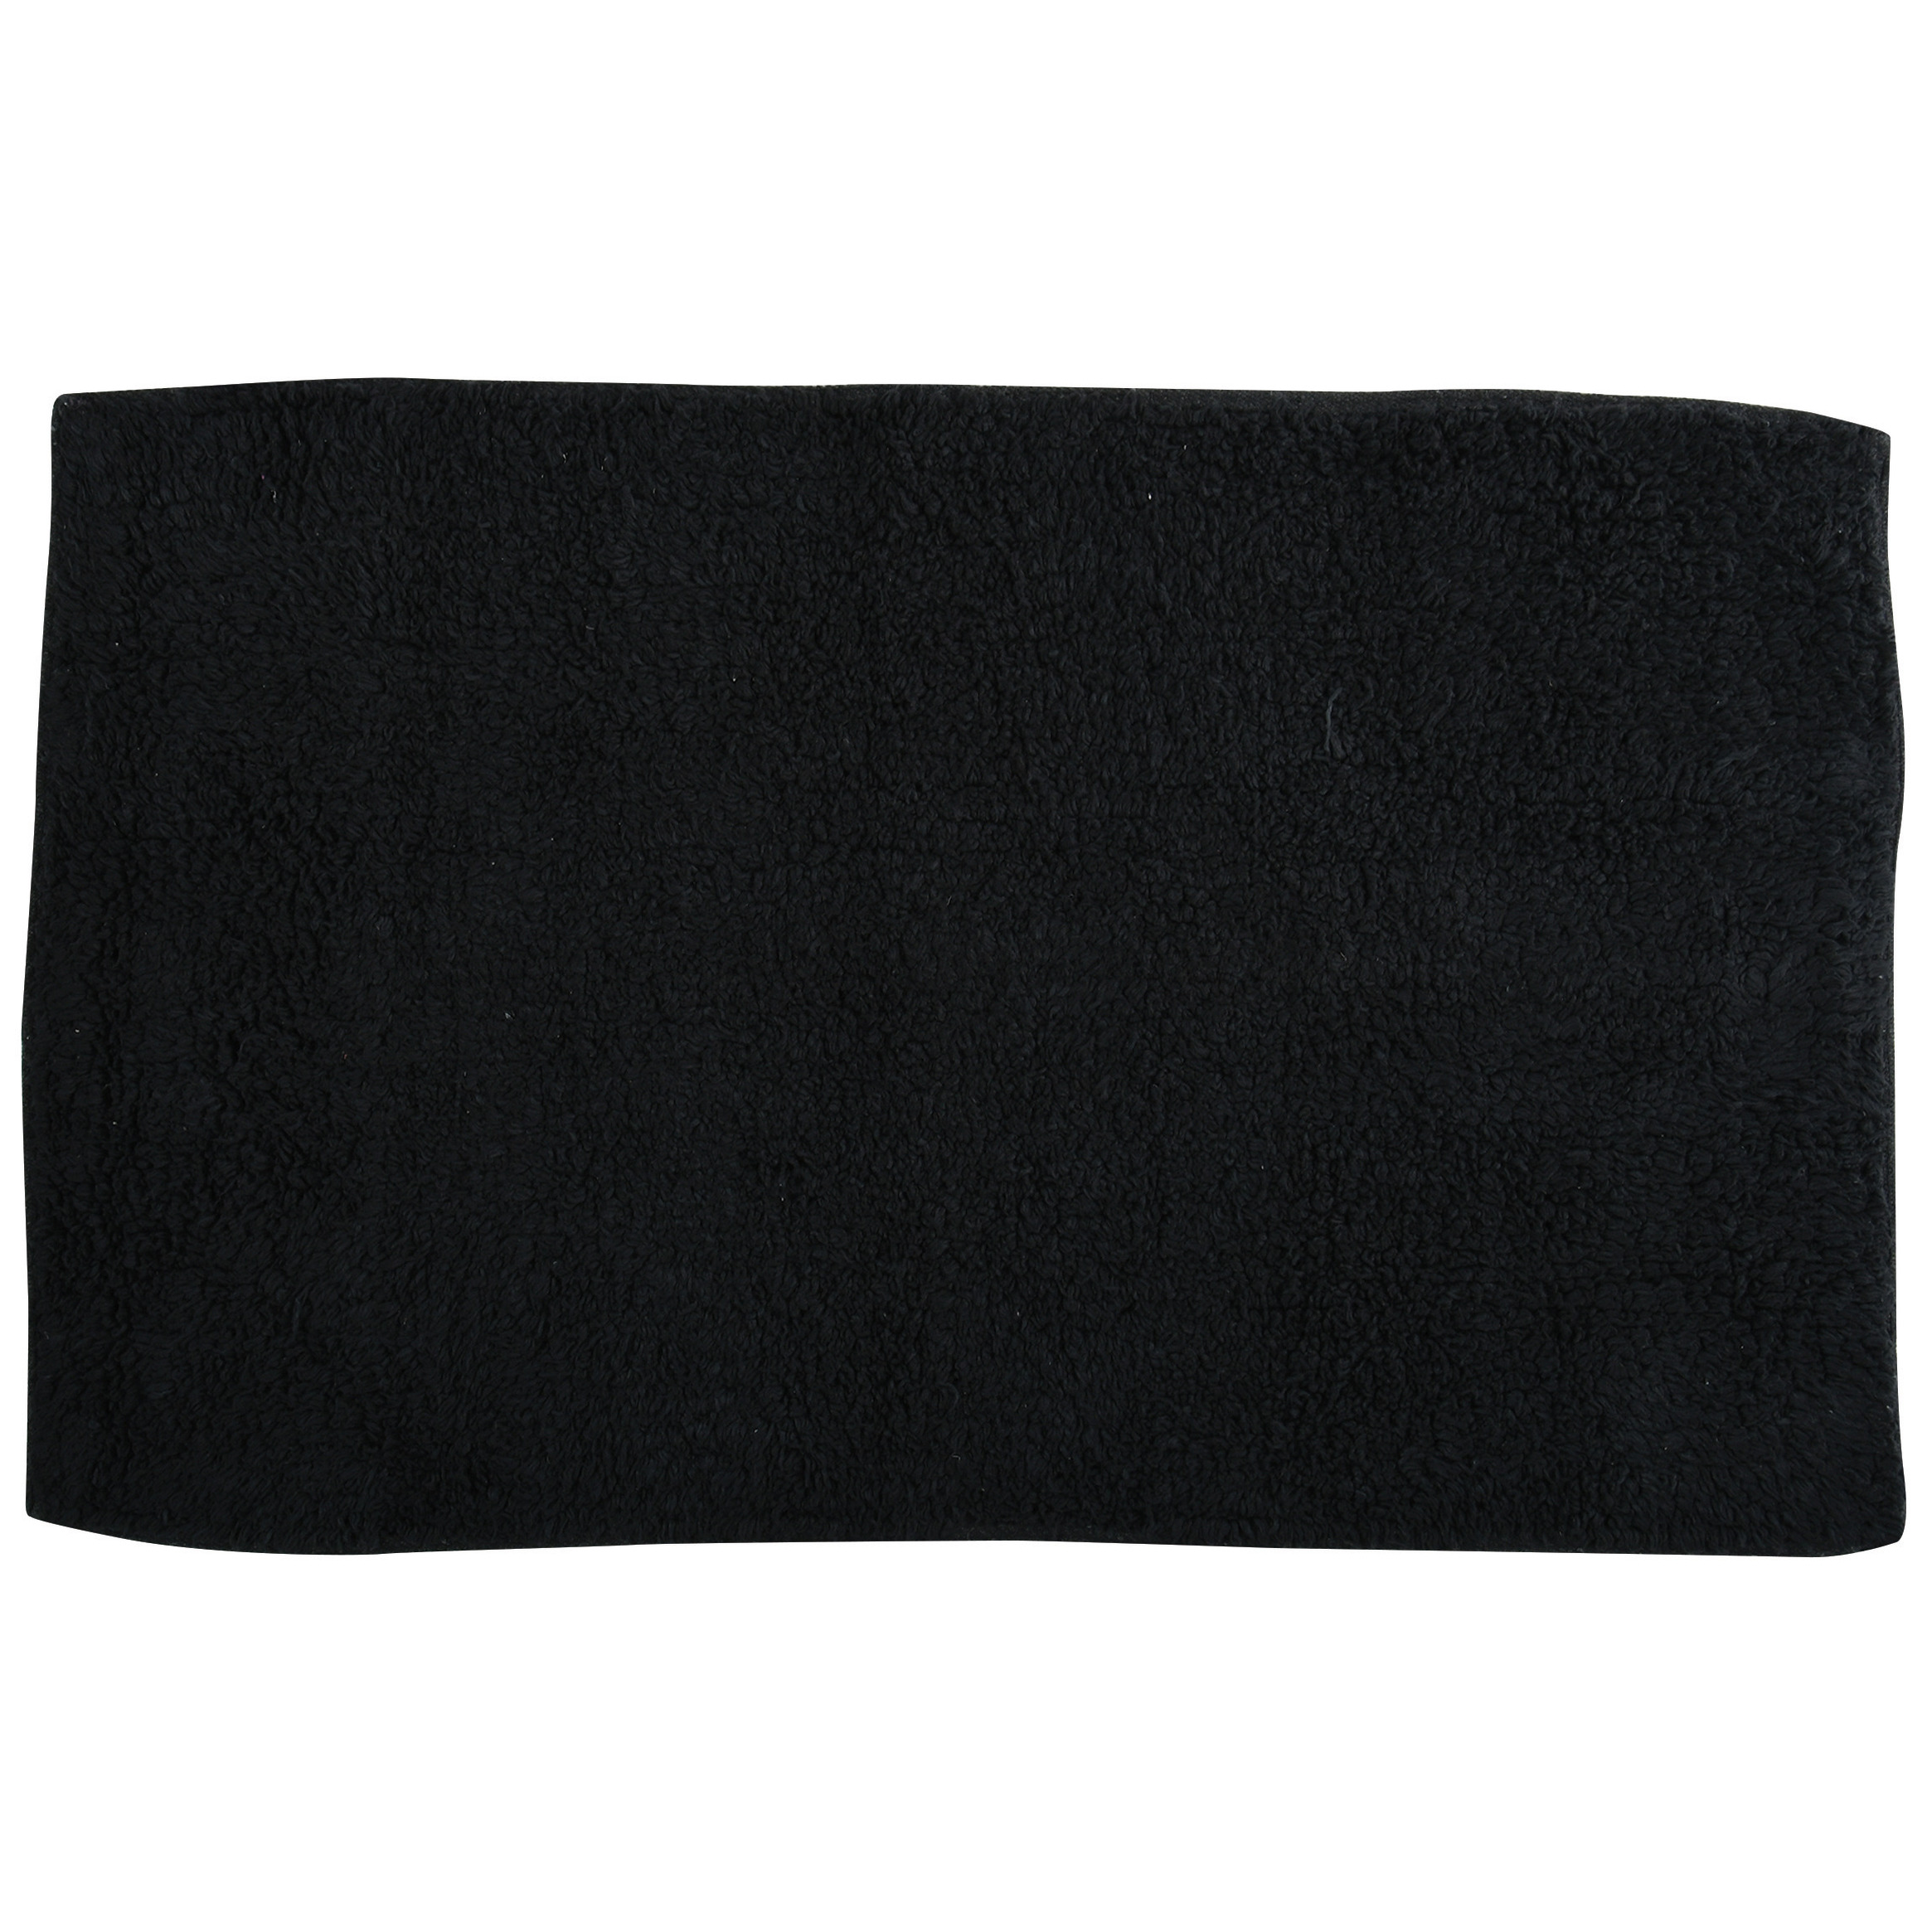 Badkamerkleedje-badmat voor op de vloer zwart 45 x 70 cm